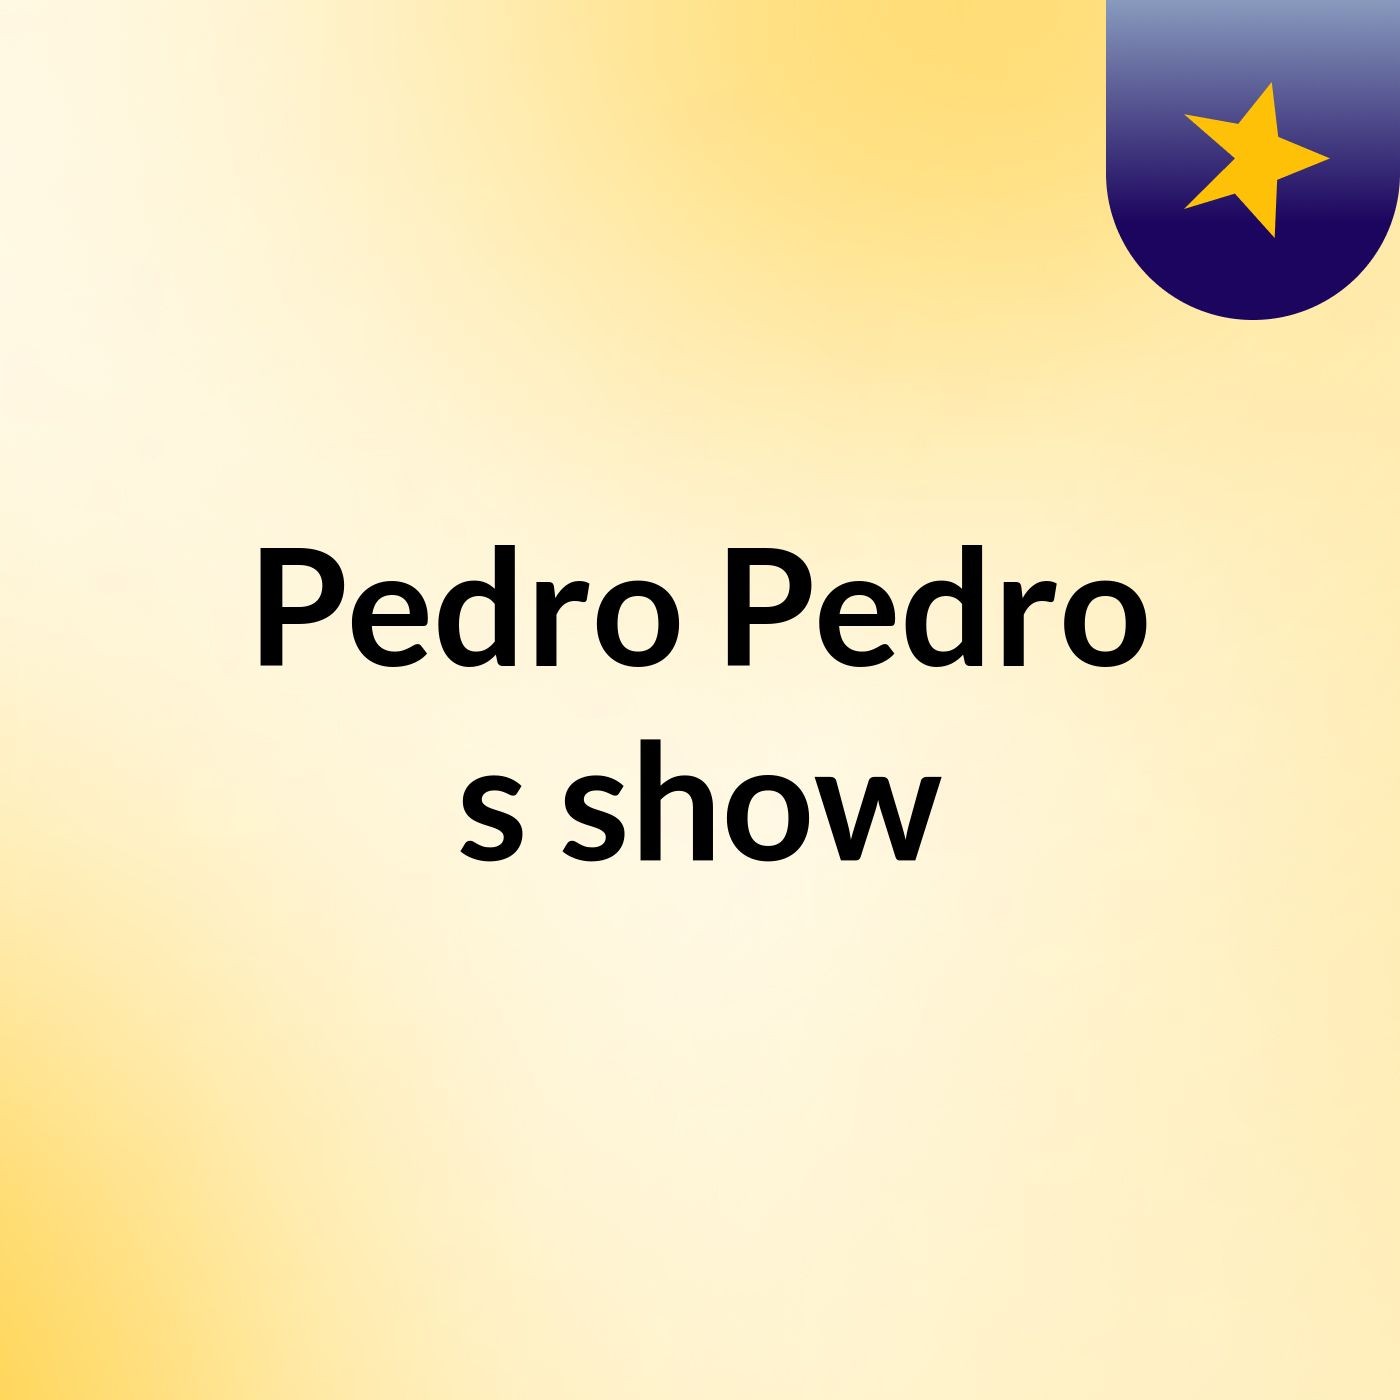 Pedro Pedro's show